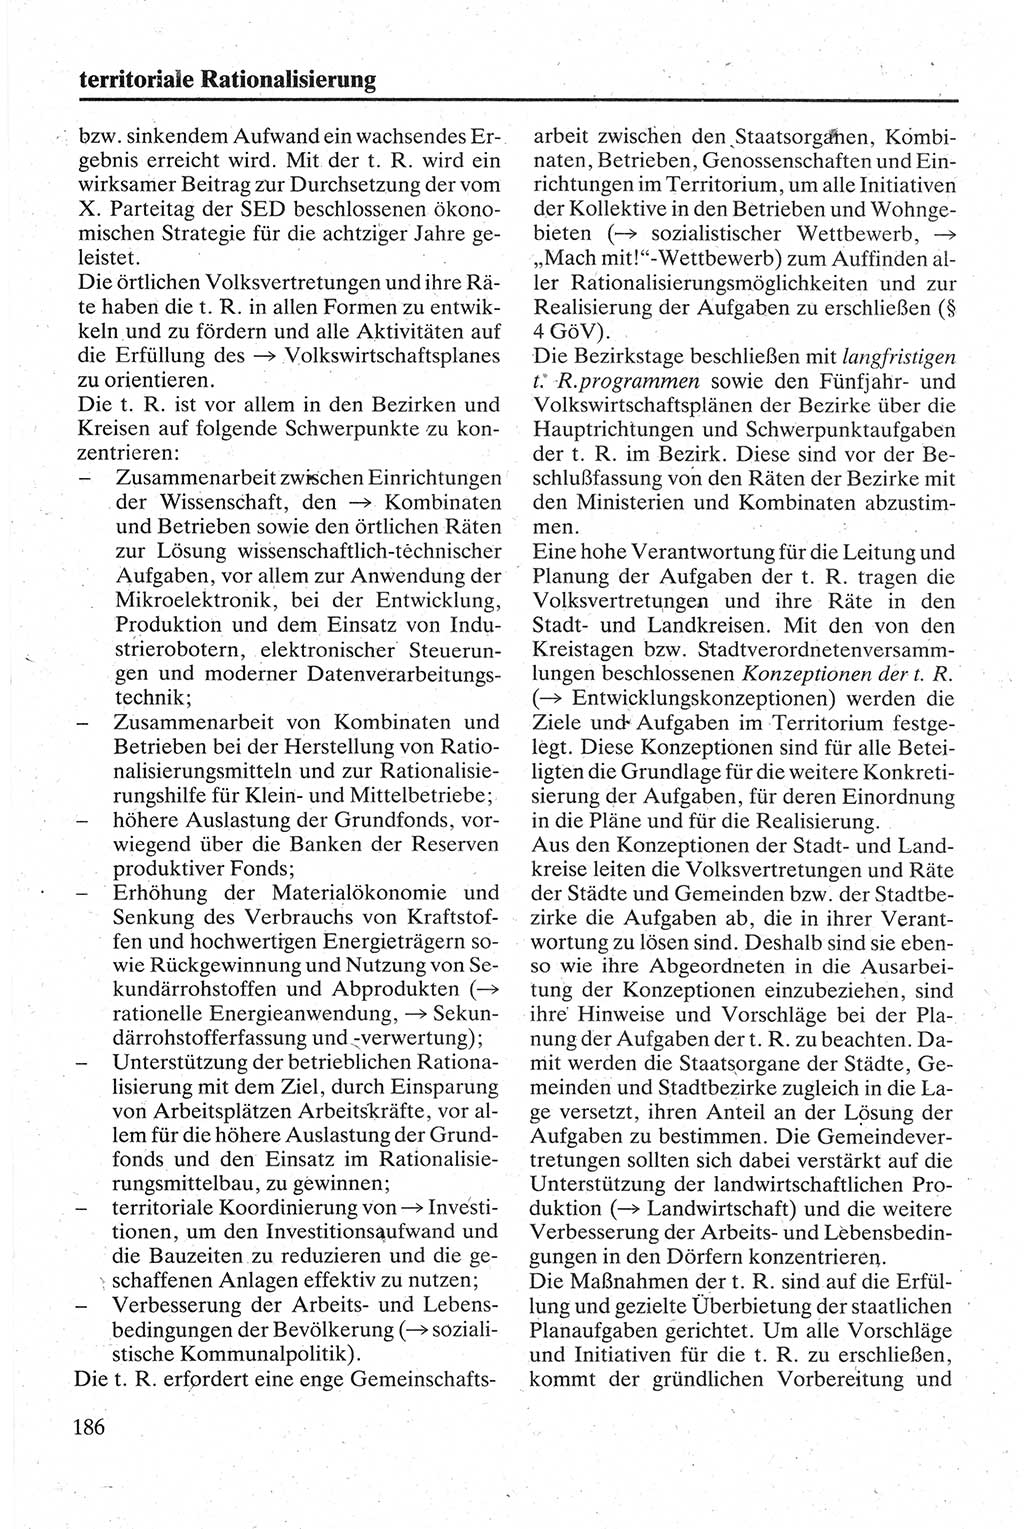 Handbuch für den Abgeordneten [Deutsche Demokratische Republik (DDR)] 1984, Seite 186 (Hb. Abg. DDR 1984, S. 186)